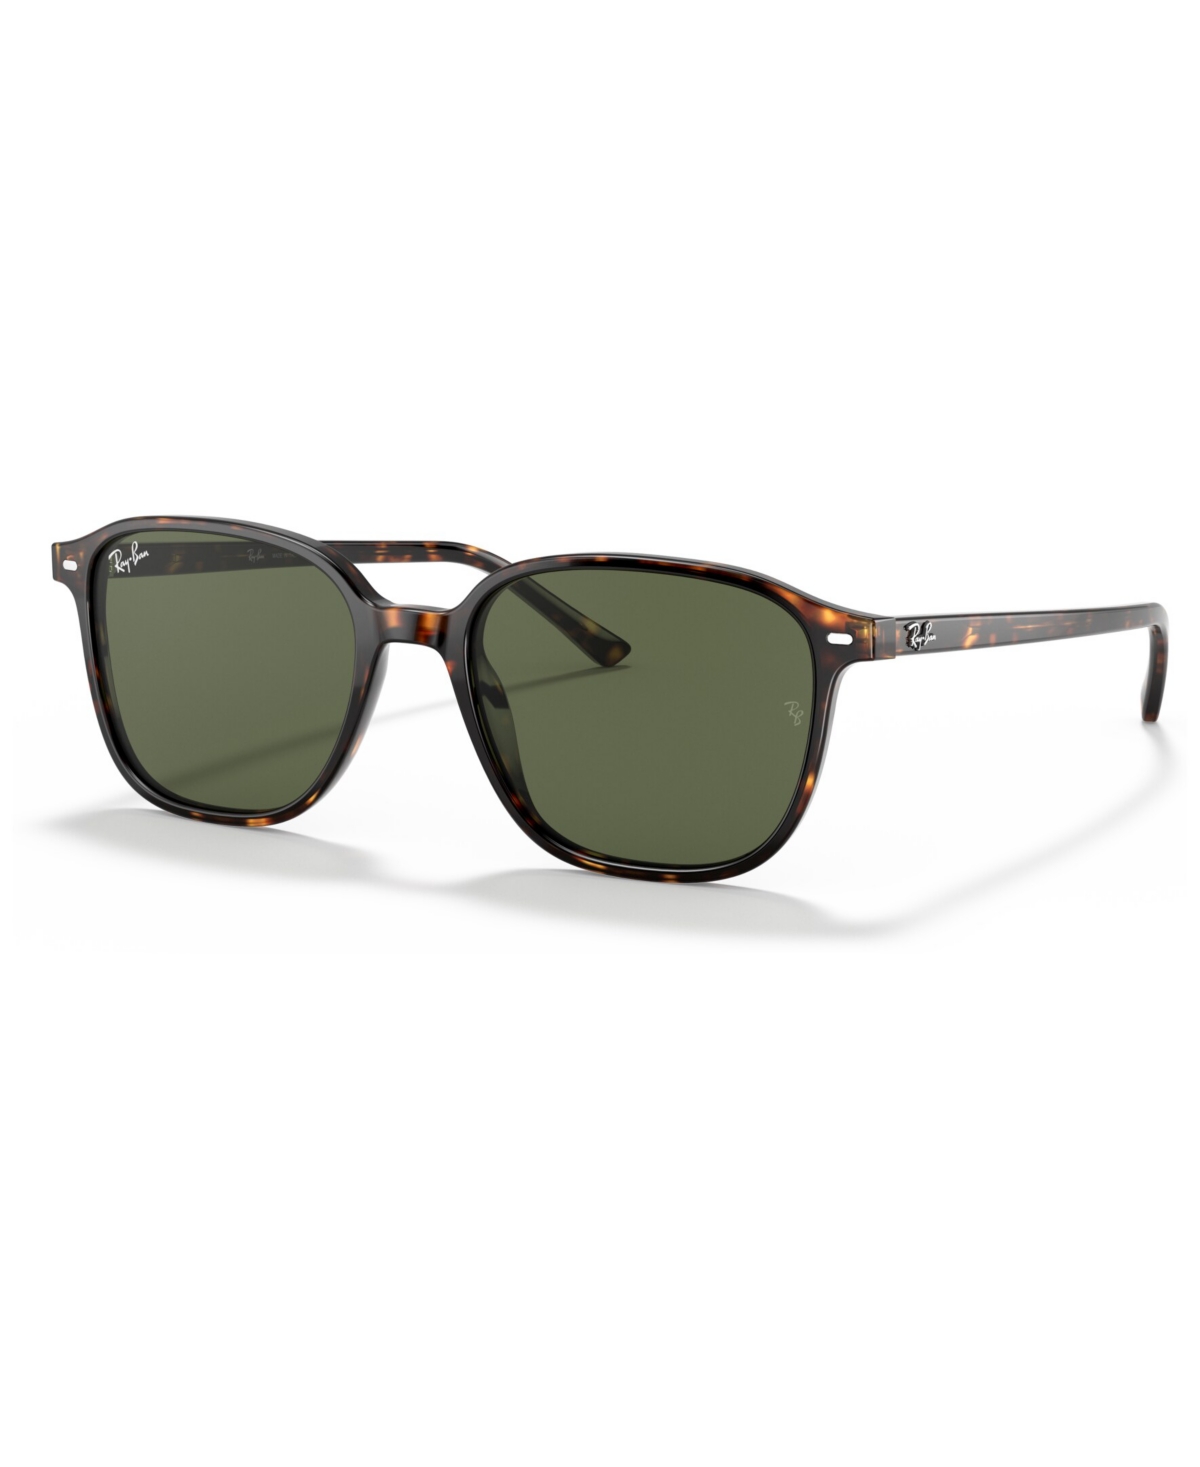 Ray Ban Sunglasses Unisex Leonard - Tortoise Frame Green Lenses 55-18